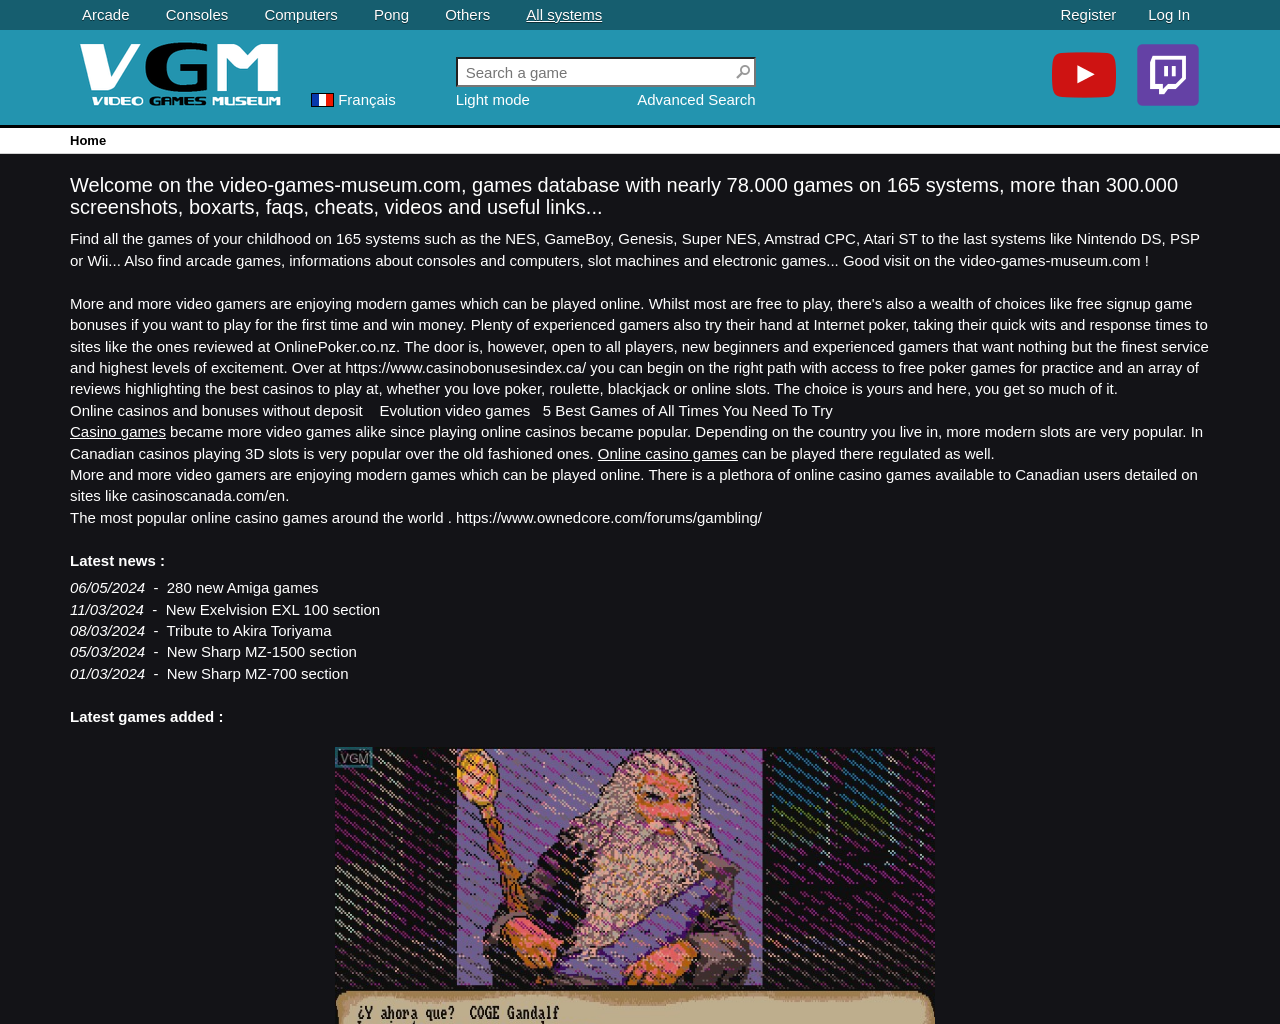 video-games-museum.com